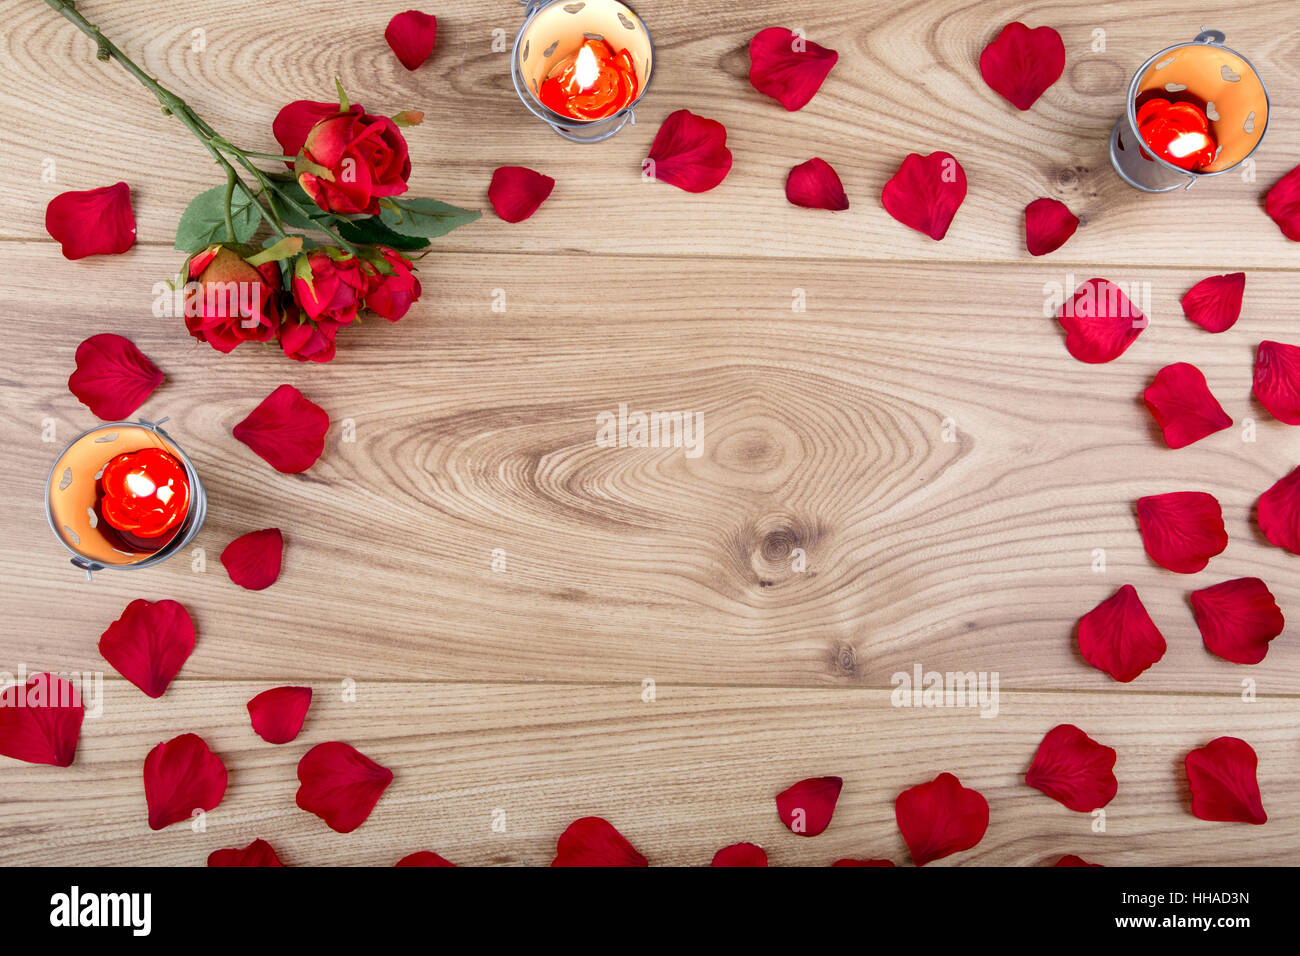 In tessuto rosso rosa e petali di rosa con candela tealight su uno sfondo di legno Foto Stock